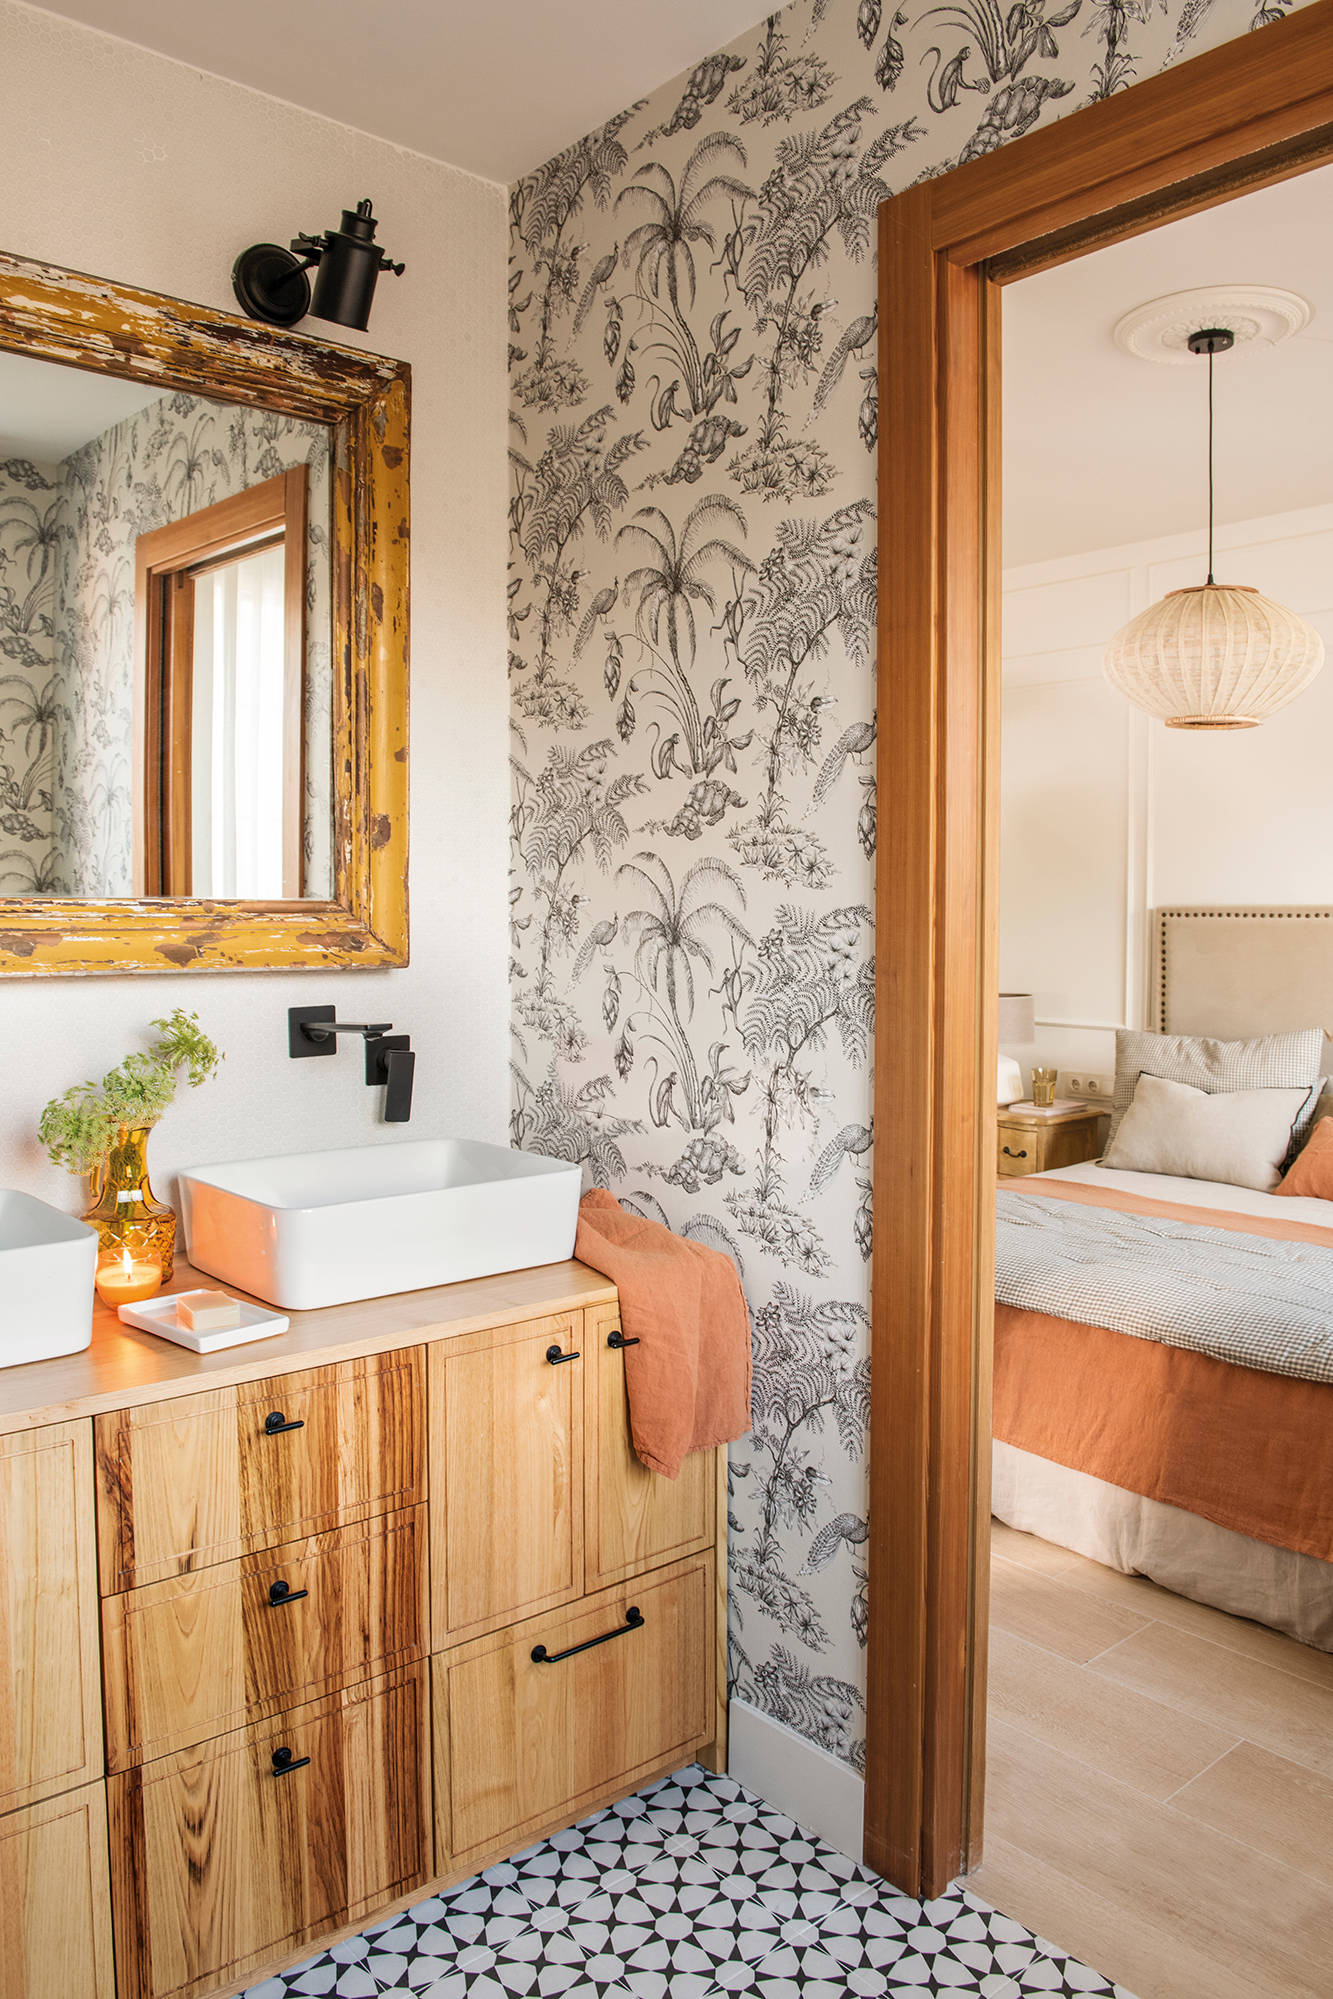 Baño pequeño con mueble de madera y pared con papel pintado